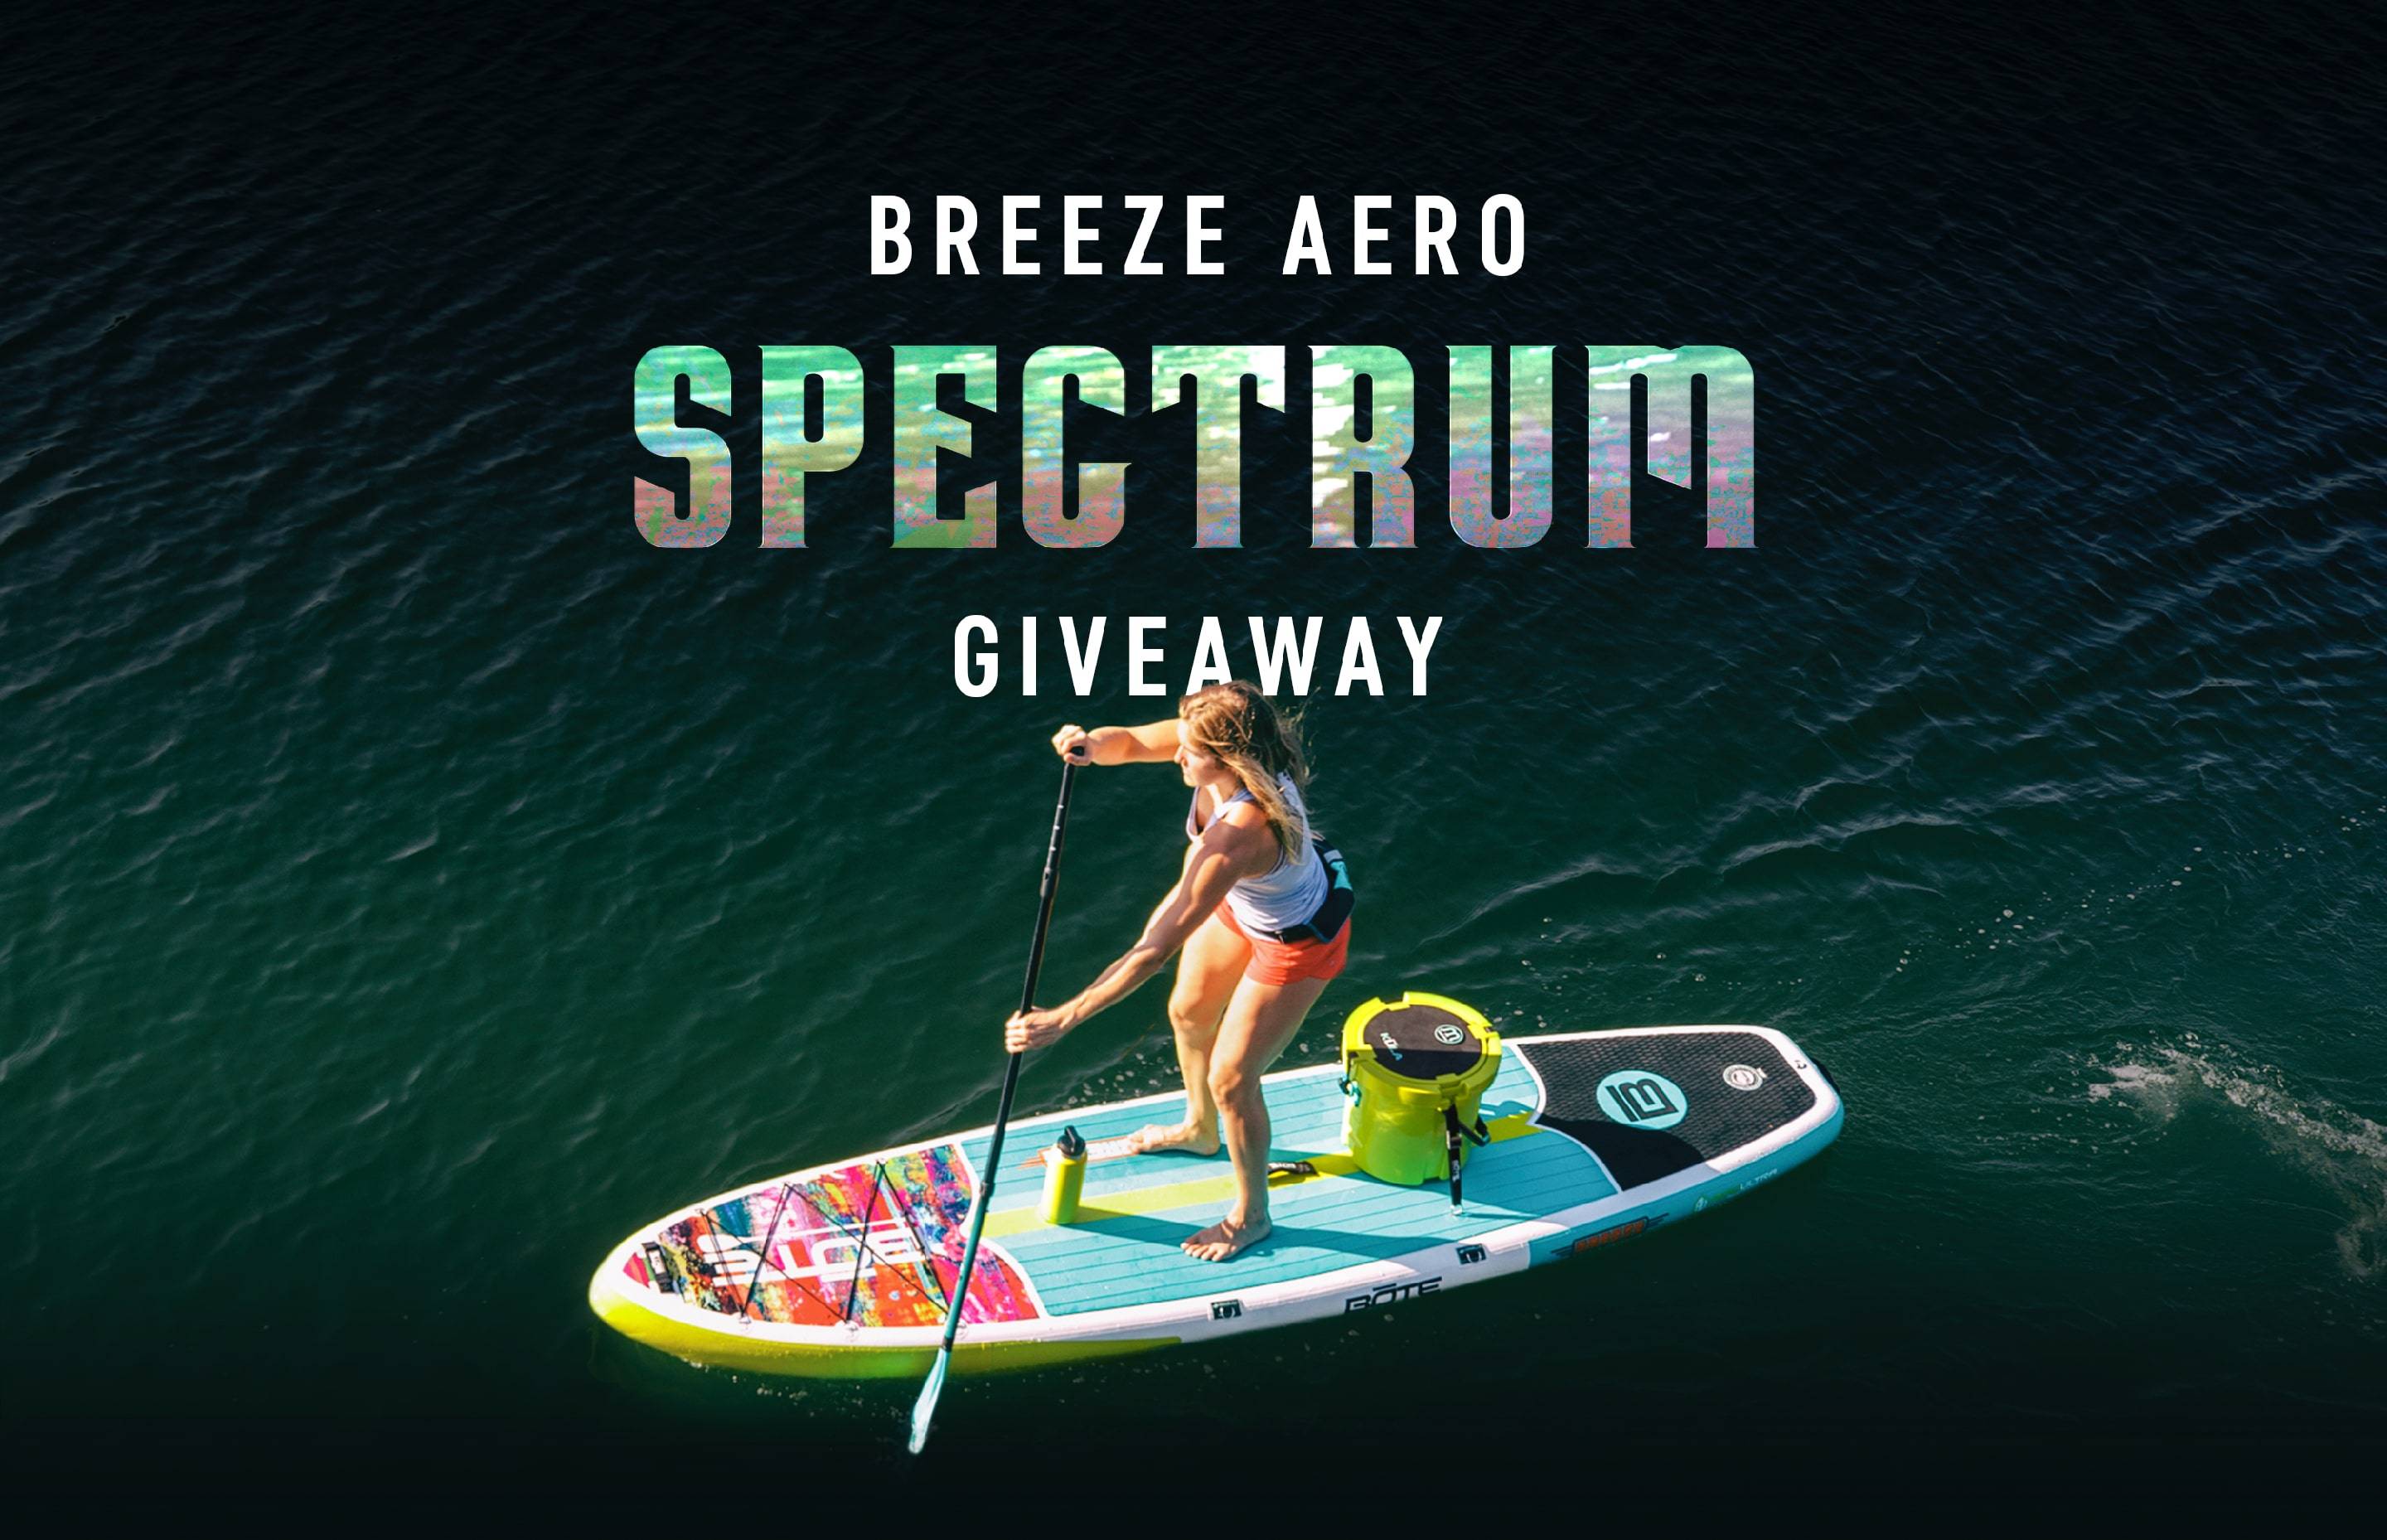 Breeze Aero Spectrum Giveaway